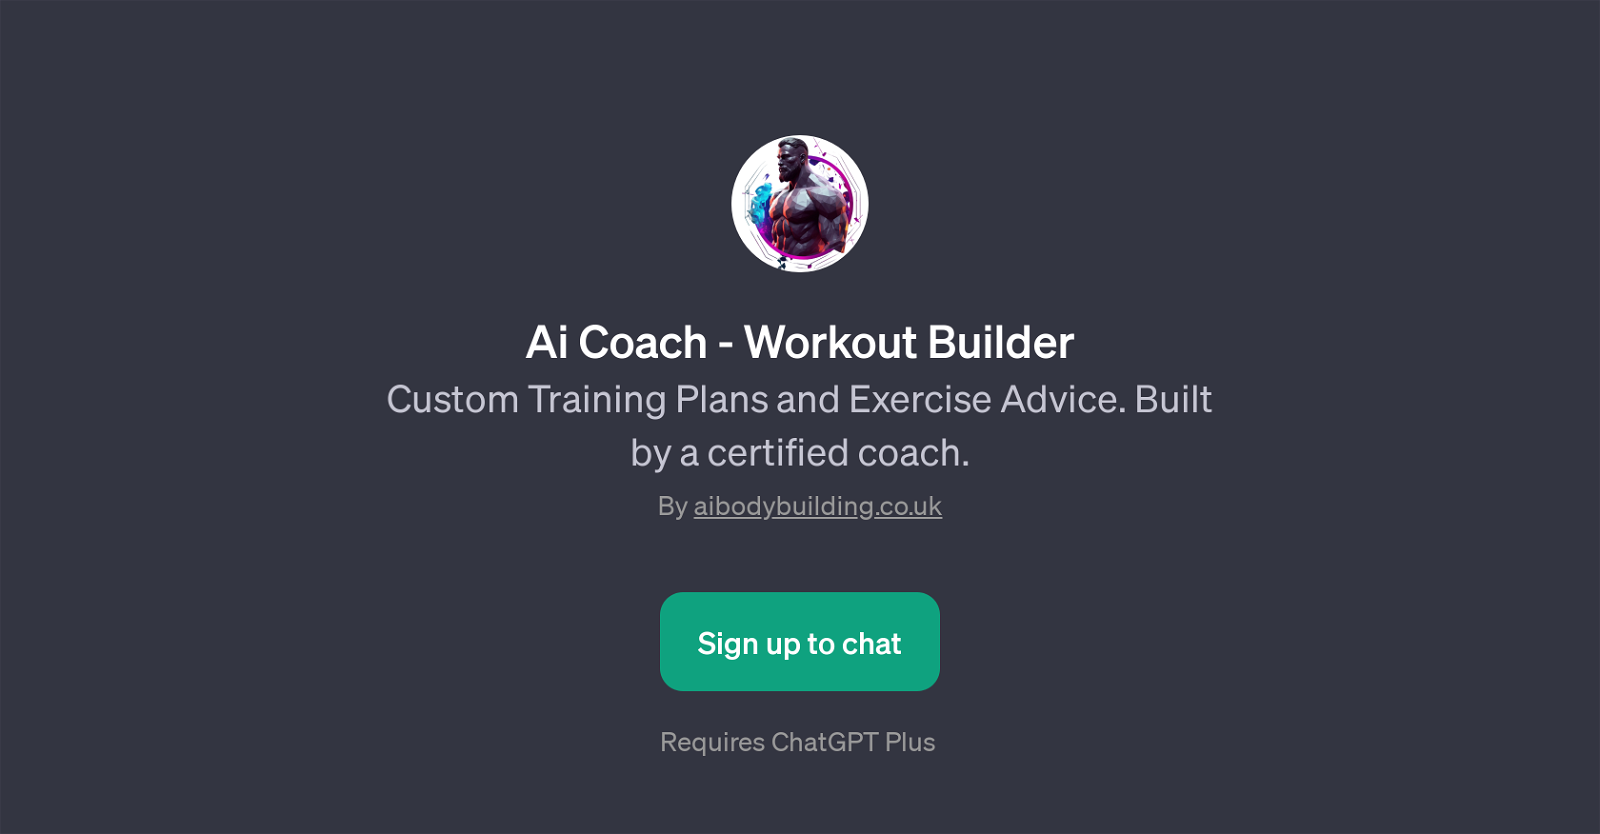 Ai Coach - Workout Builder website